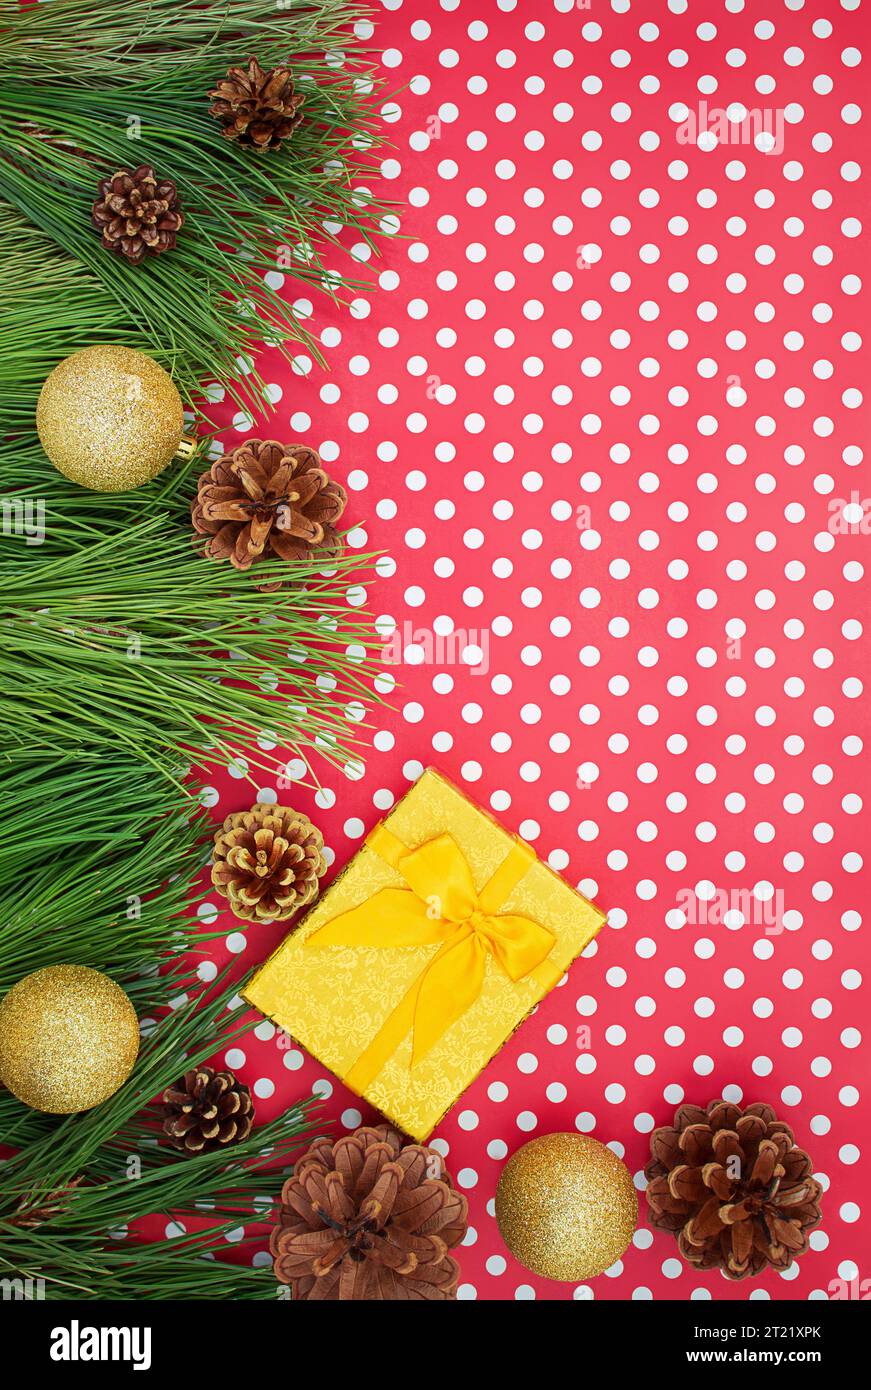 Confezione regalo giallo dorato con fiocco, rami di abete con coni di pino e palline lucide su sfondo bianco rosso con pois. Natale, Capodanno, compleanno. C Foto Stock